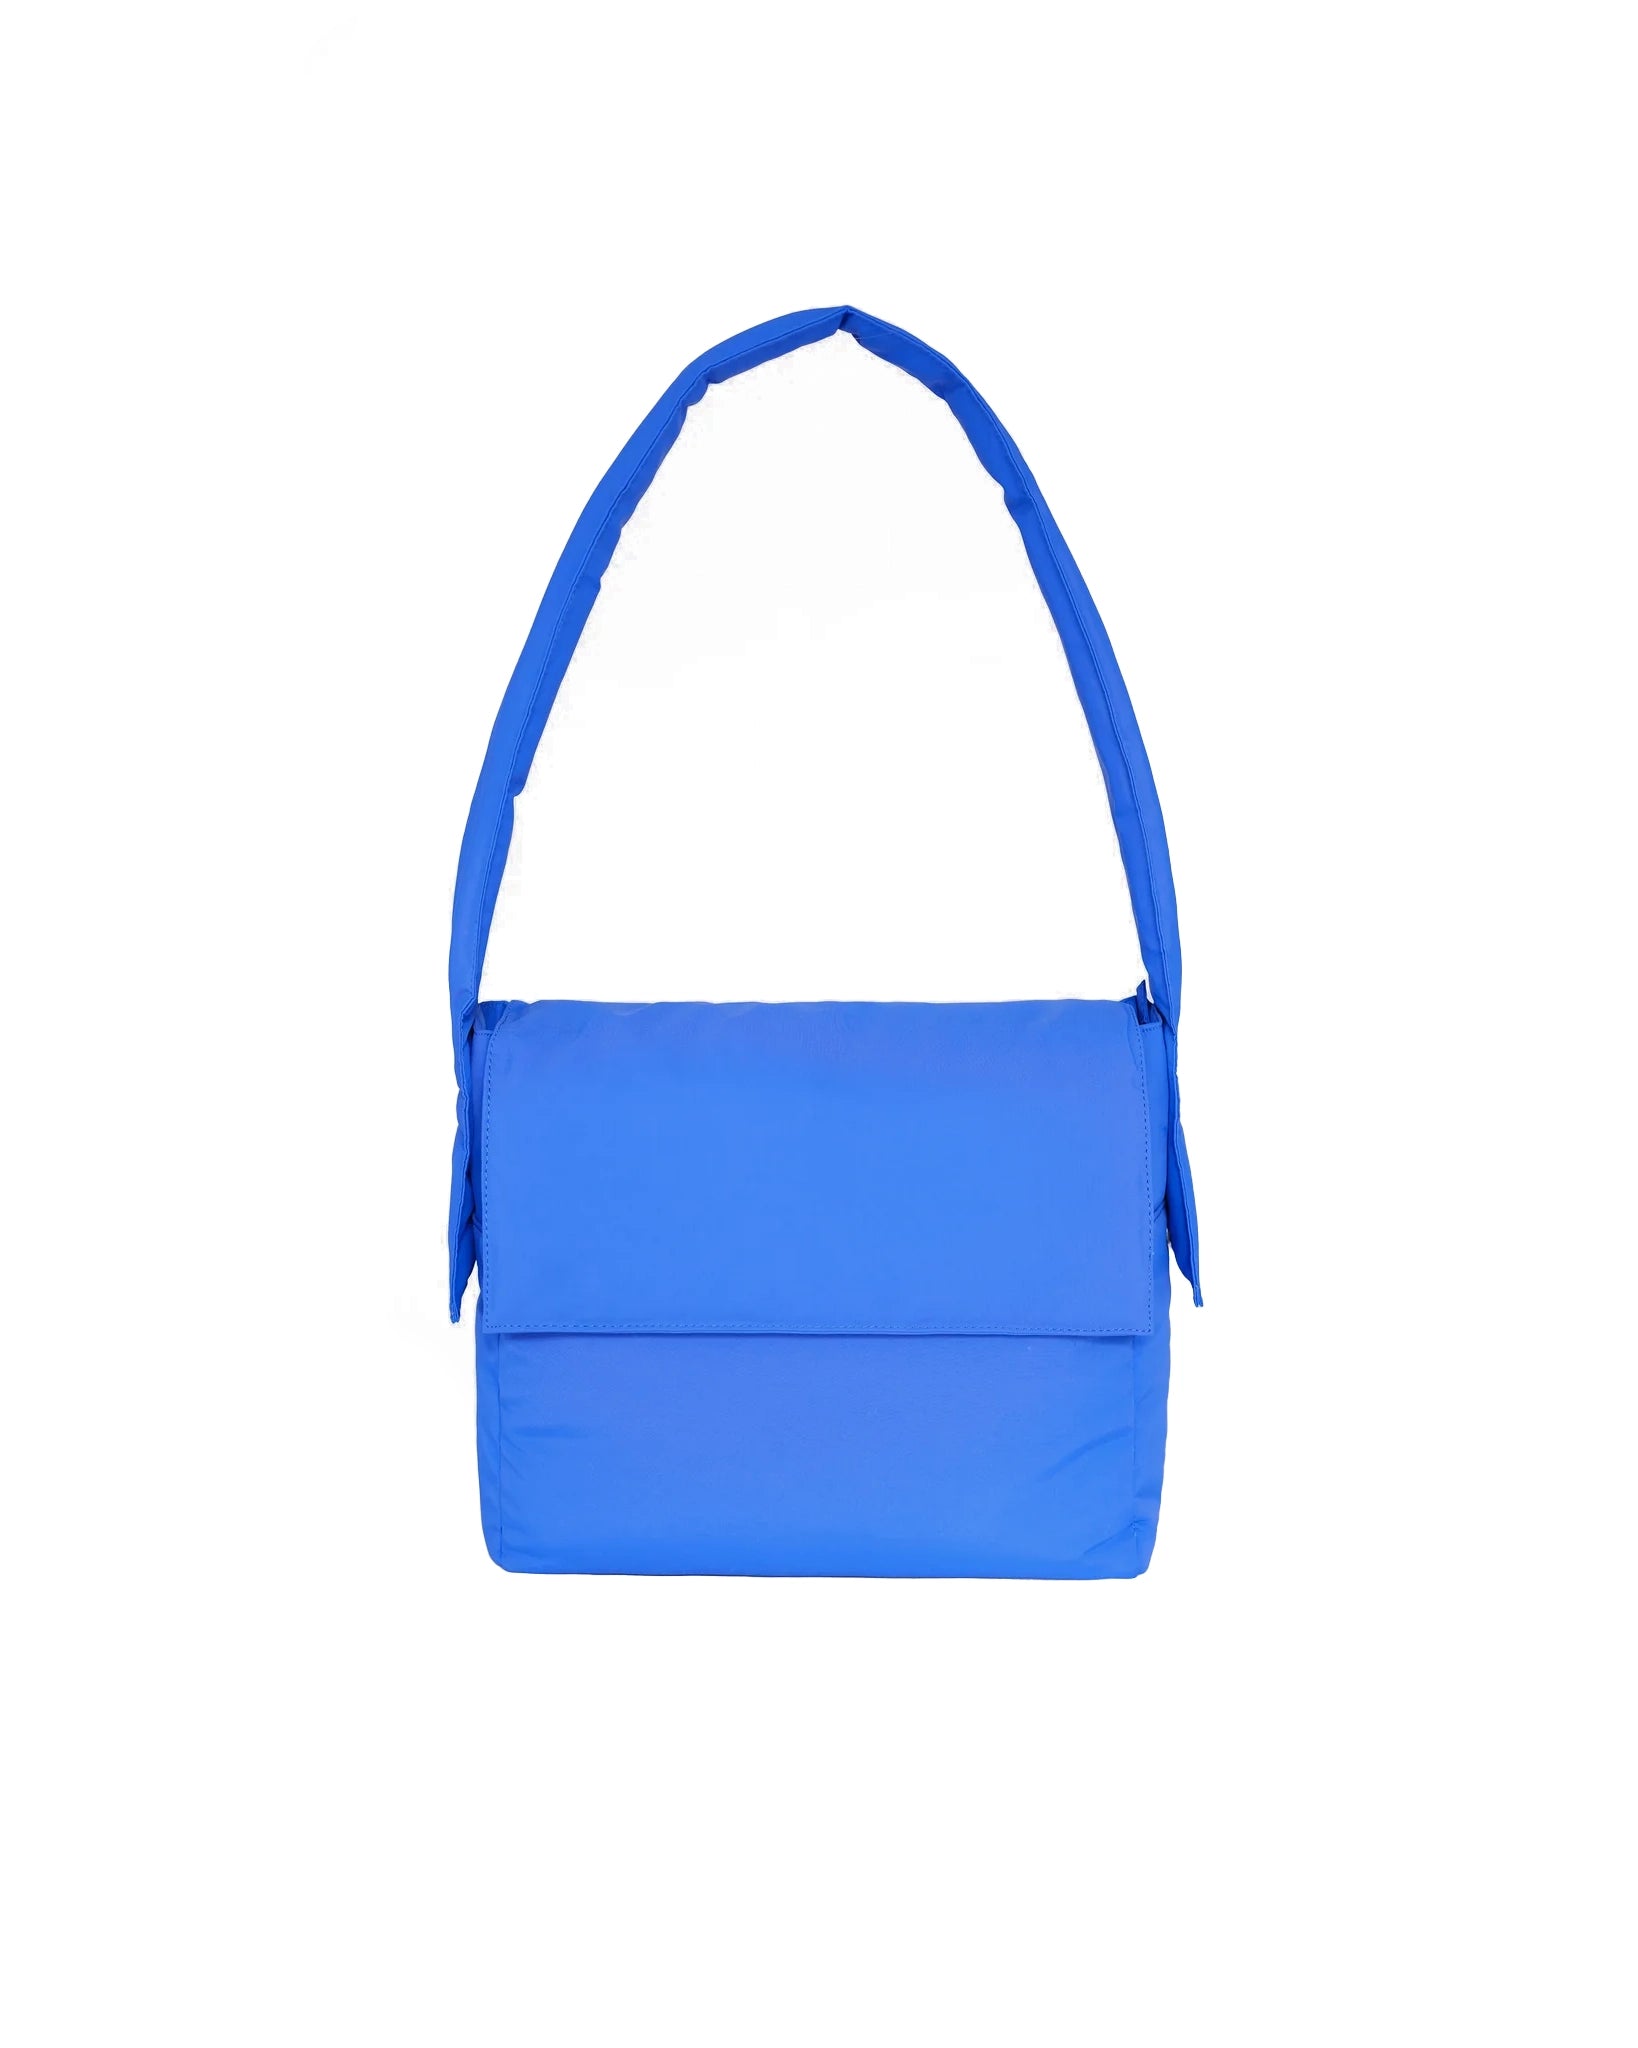 Sac Querida soft bag - Cobalt blue